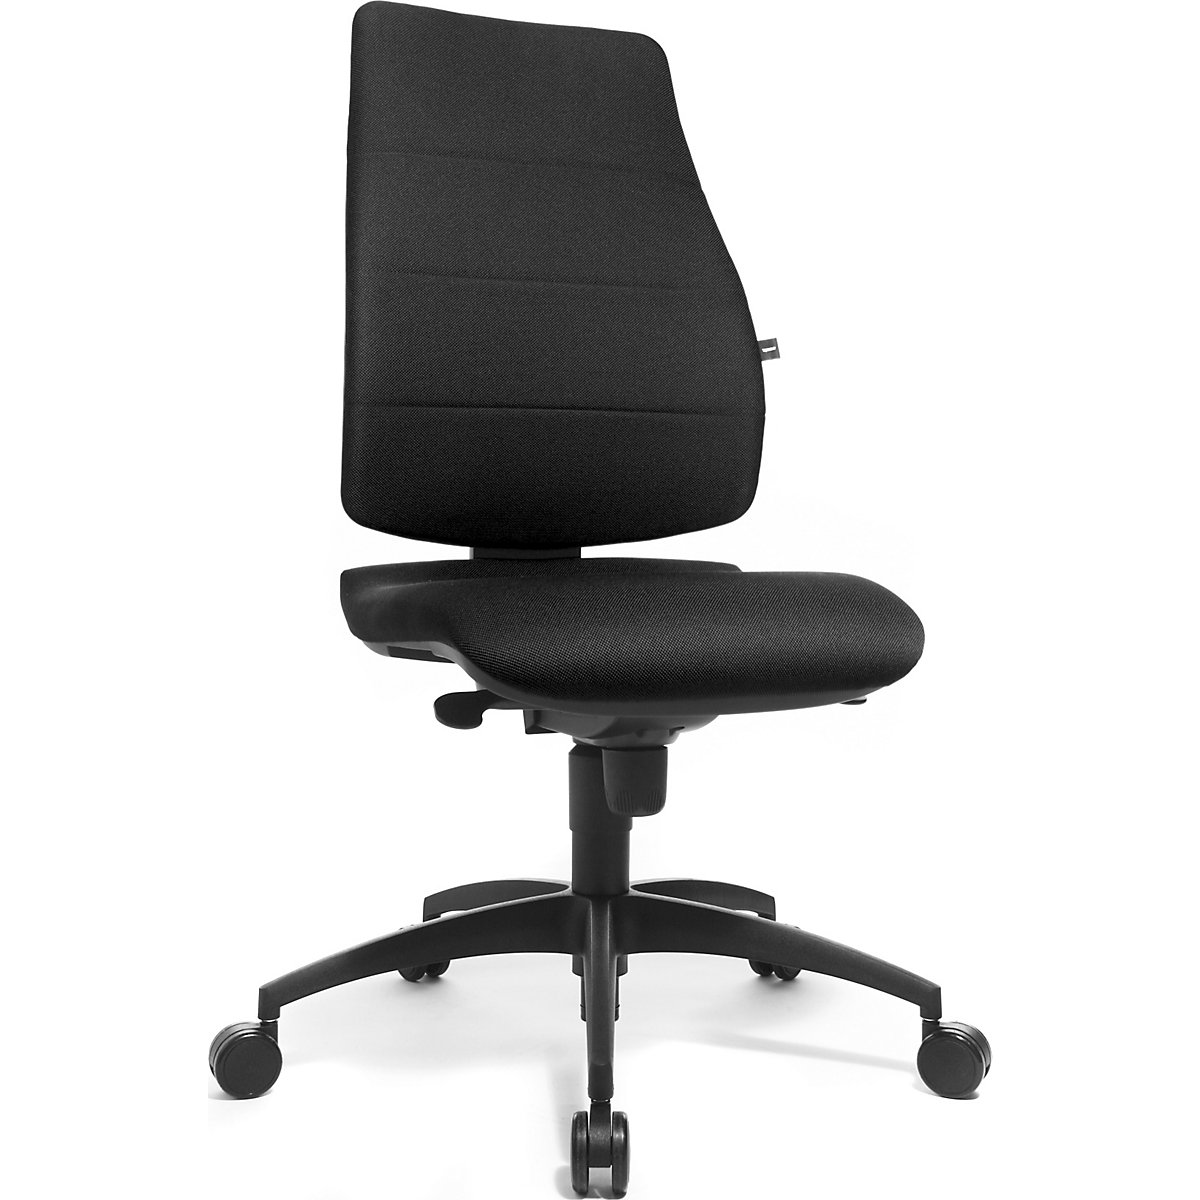 Okretna stolica s potporom za kralježnicu, visina naslona za leđa 680 mm – Topstar, naslon za leđa obložen, presvlaka sjedala u crnoj boji-3